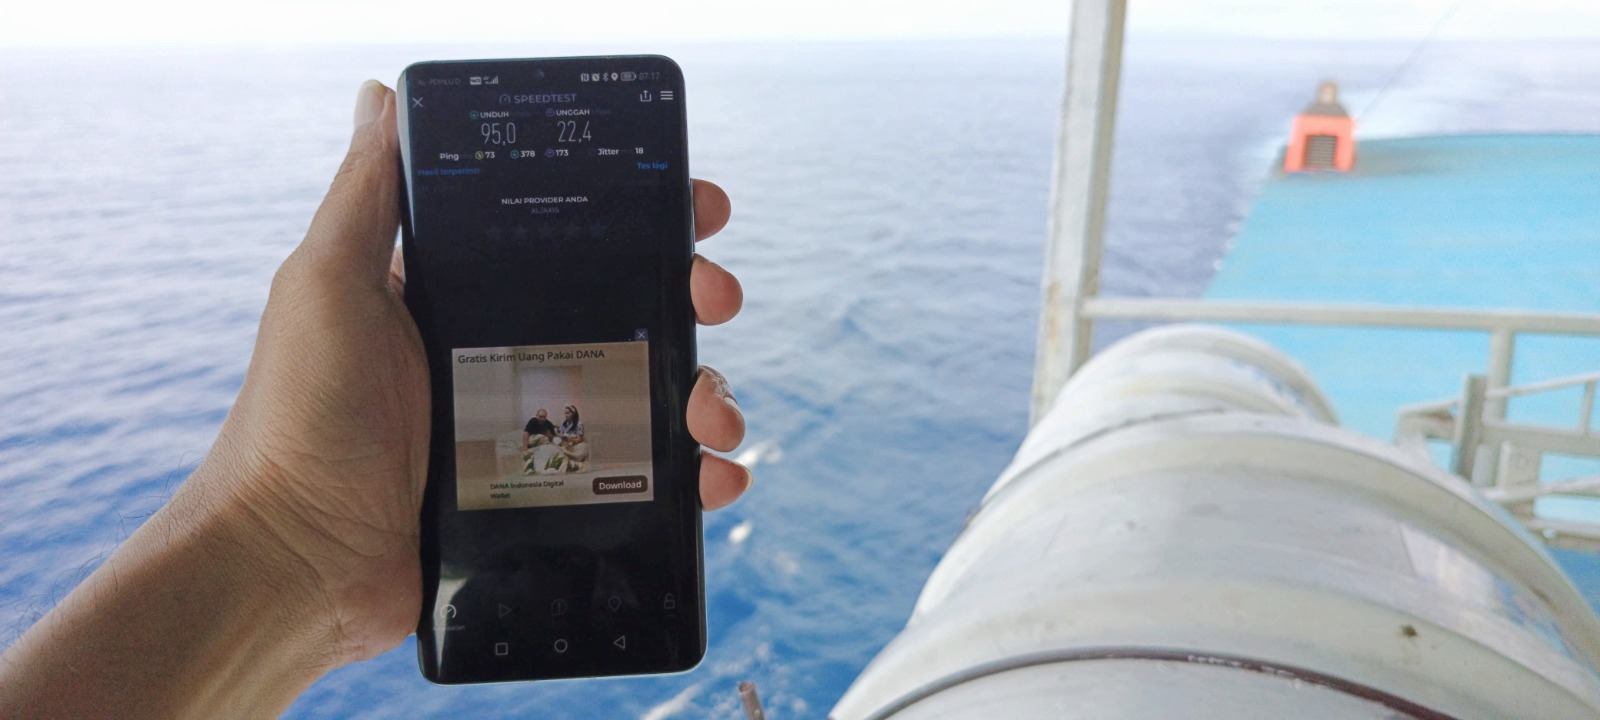 Menikmati Konektivitas Berkualitas di Laut: XL Axiata Memperkuat Sinyal 4G di Kapal Penyeberangan